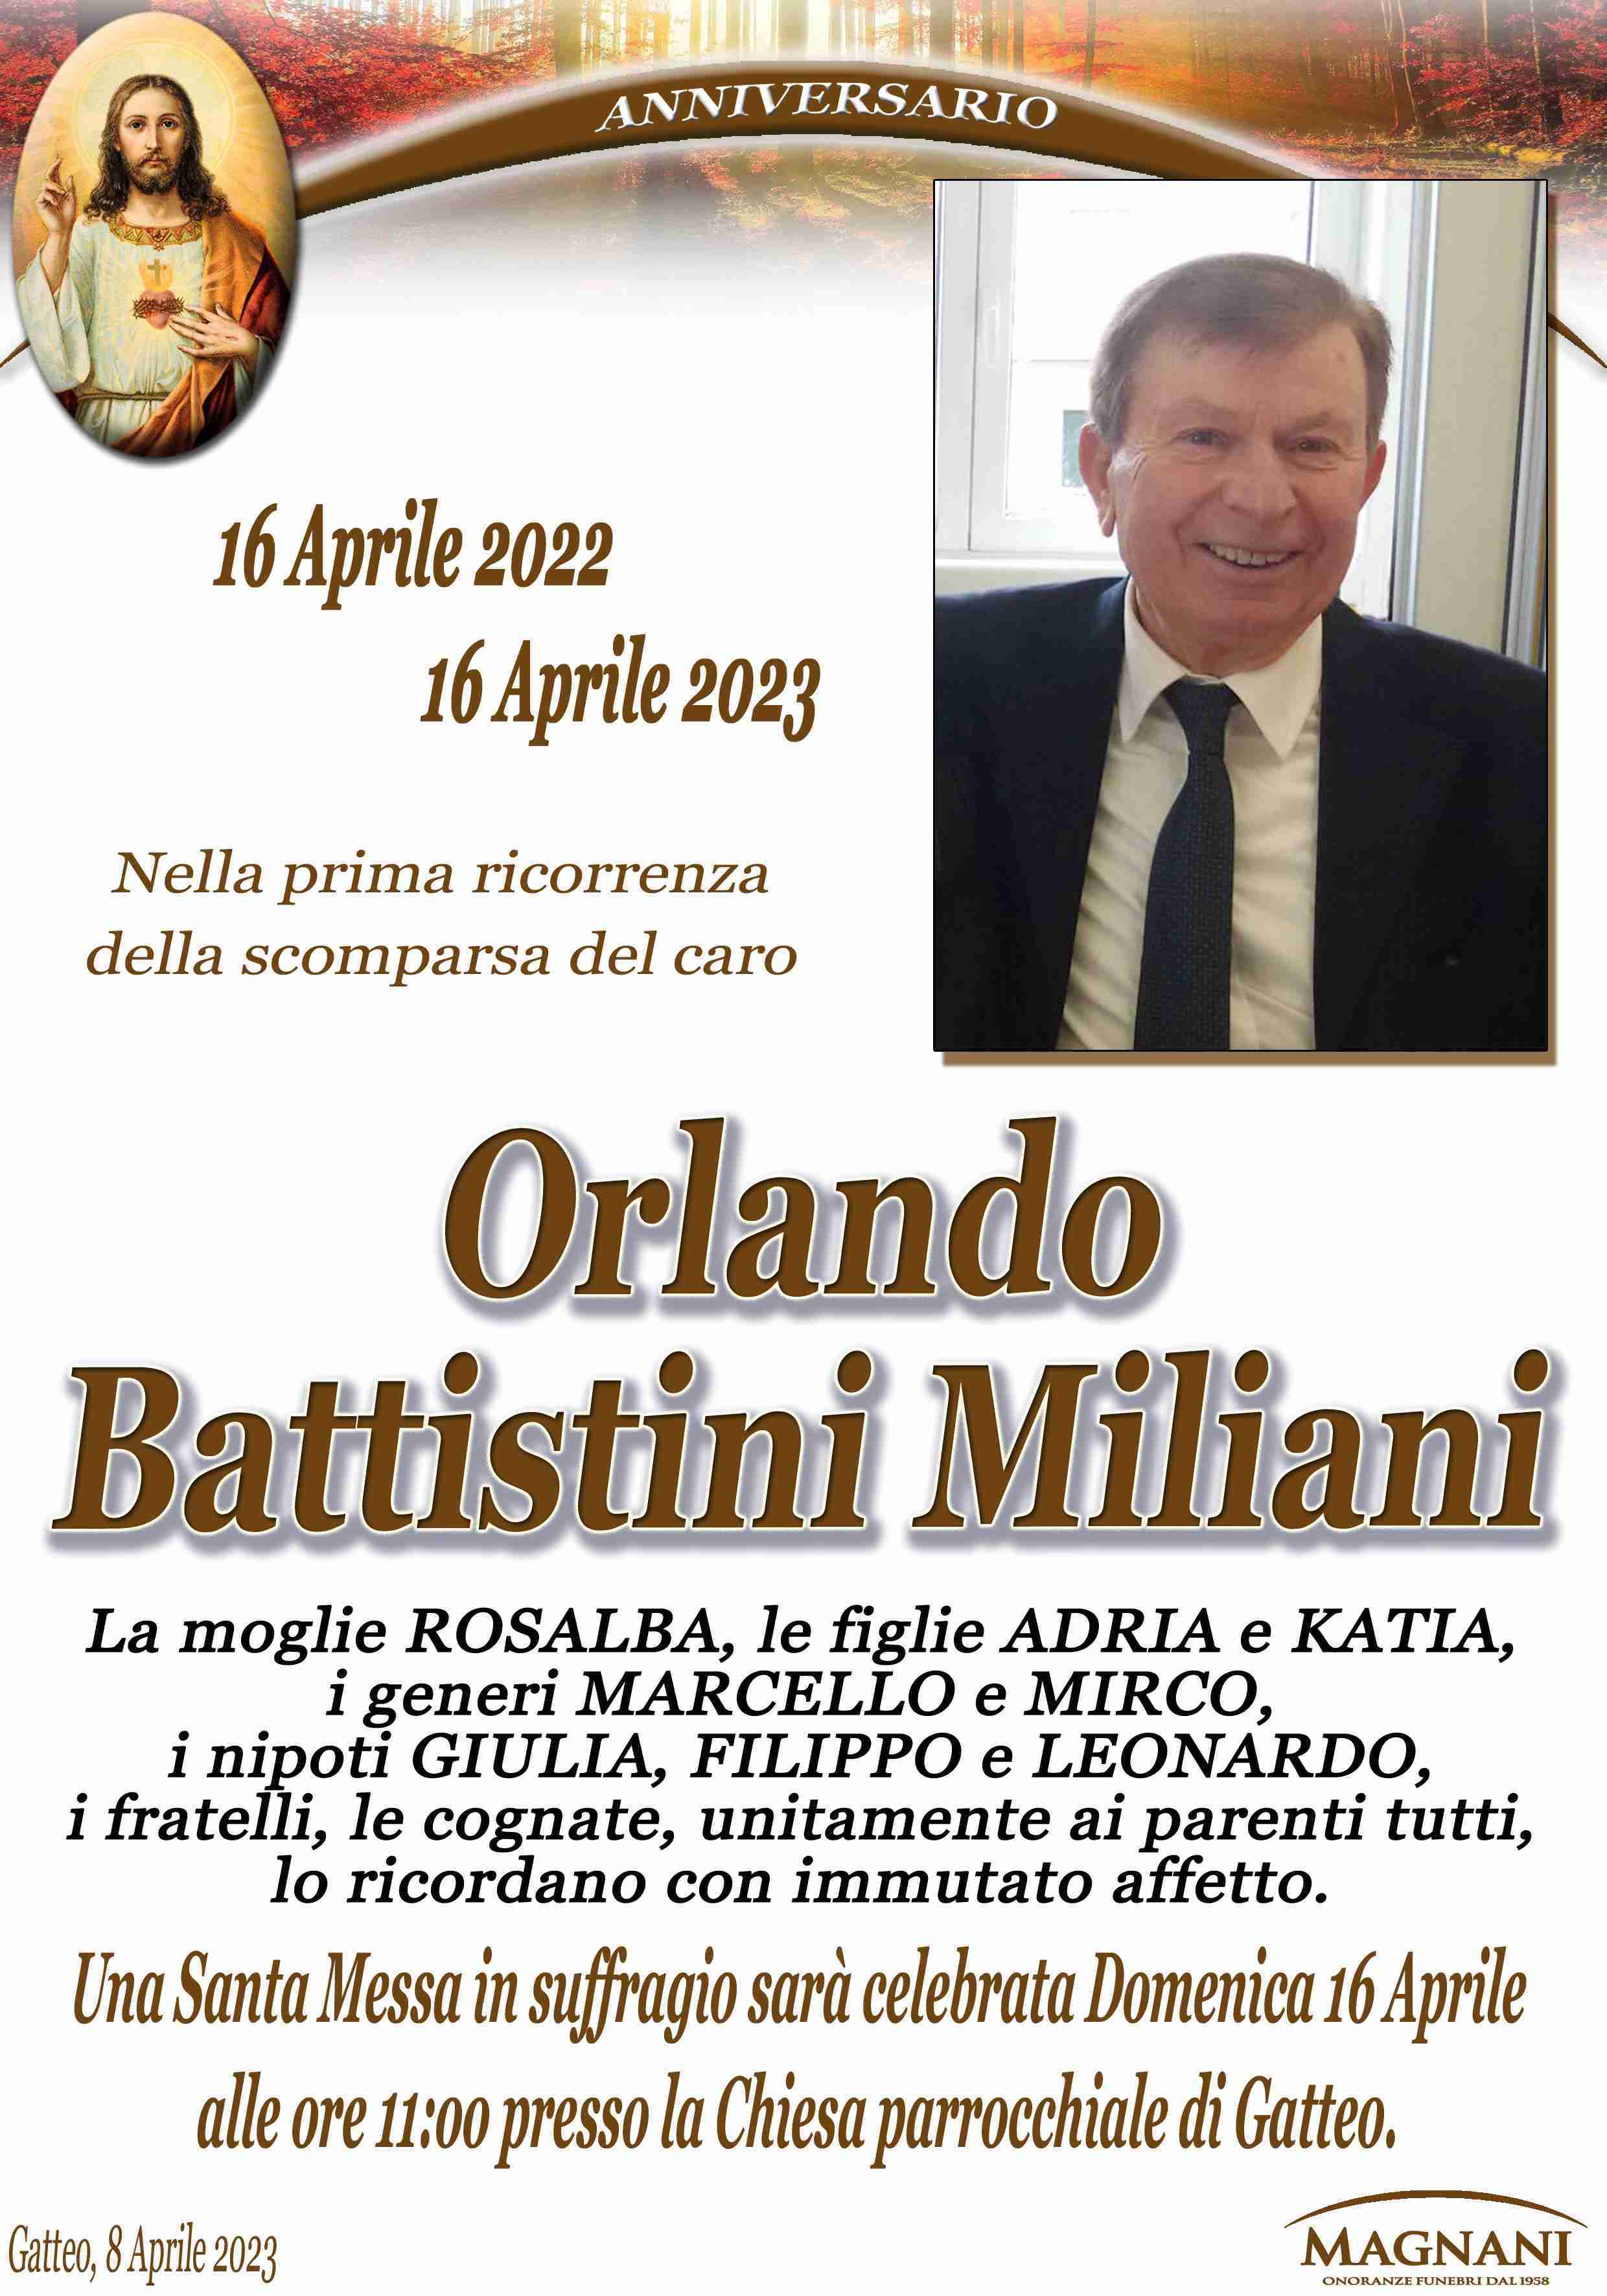 Orlando Battistini Miliani